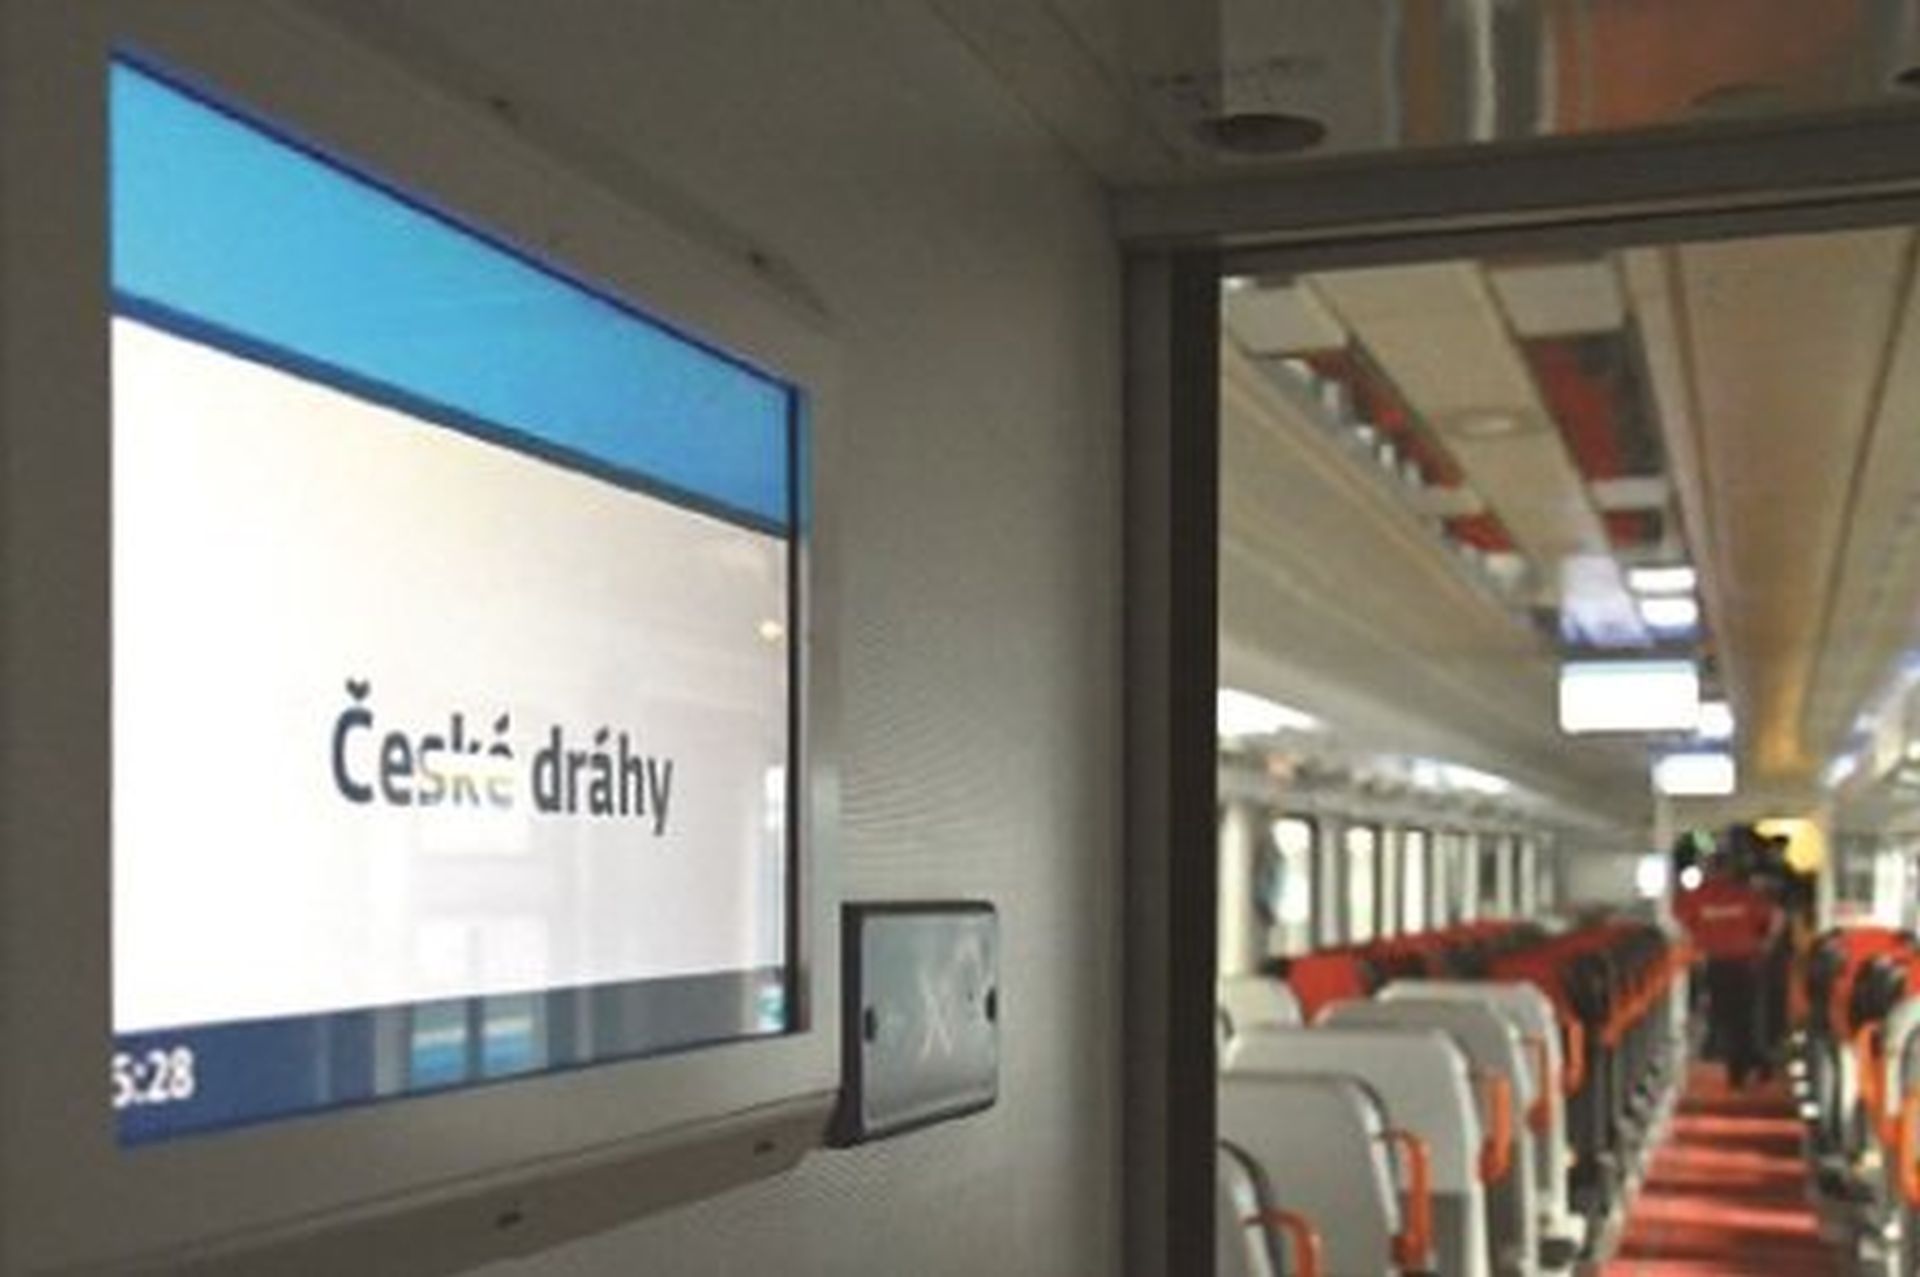 S výrobky UniControls se setkávají běžně cestující ve vozech Českých drah. Foto: UniControls